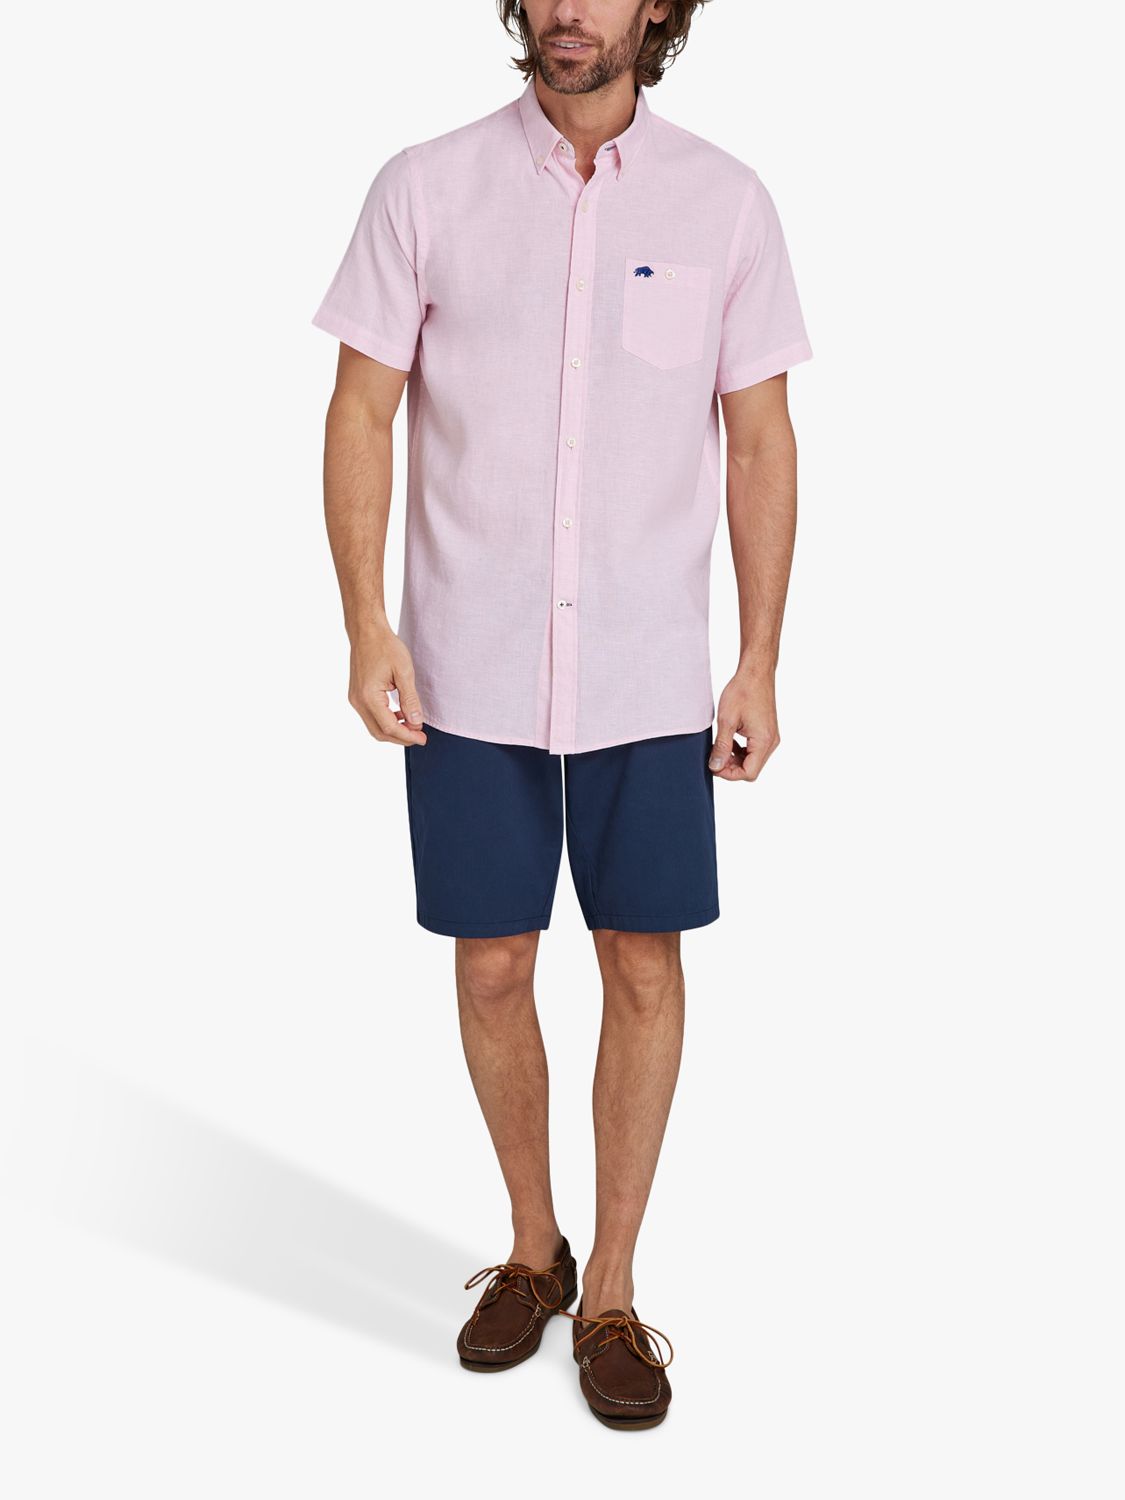 Raging Bull Classic Linen Blend Short Sleeve Shirt, Pink, S